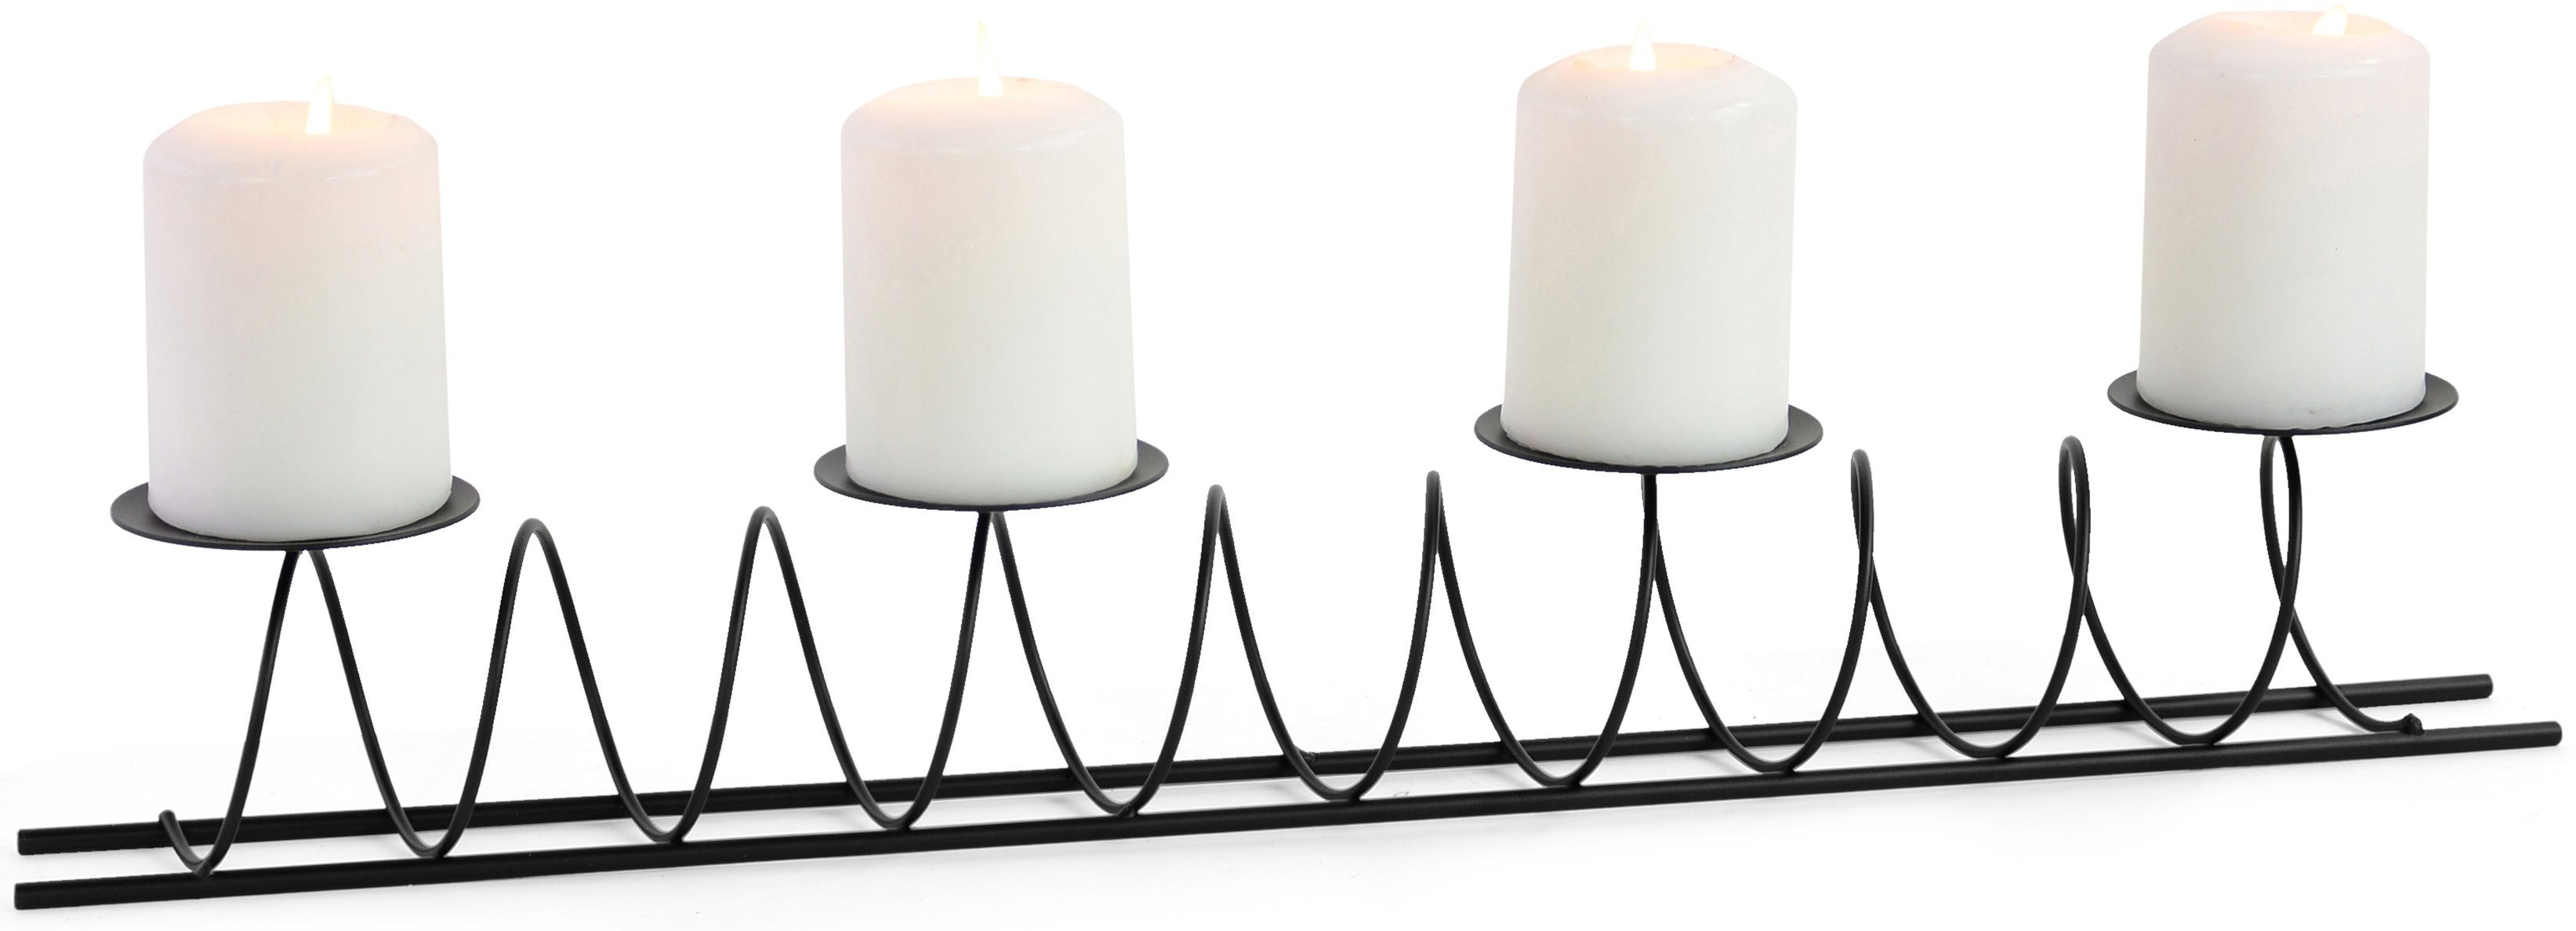 RIFFELMACHER & (1 WEINBERGER Adventsleuchter Kerzenhalter aus Design, besonderen schwarz Weihnachtsdeko St), Metall, 4-flammig Spirale, im